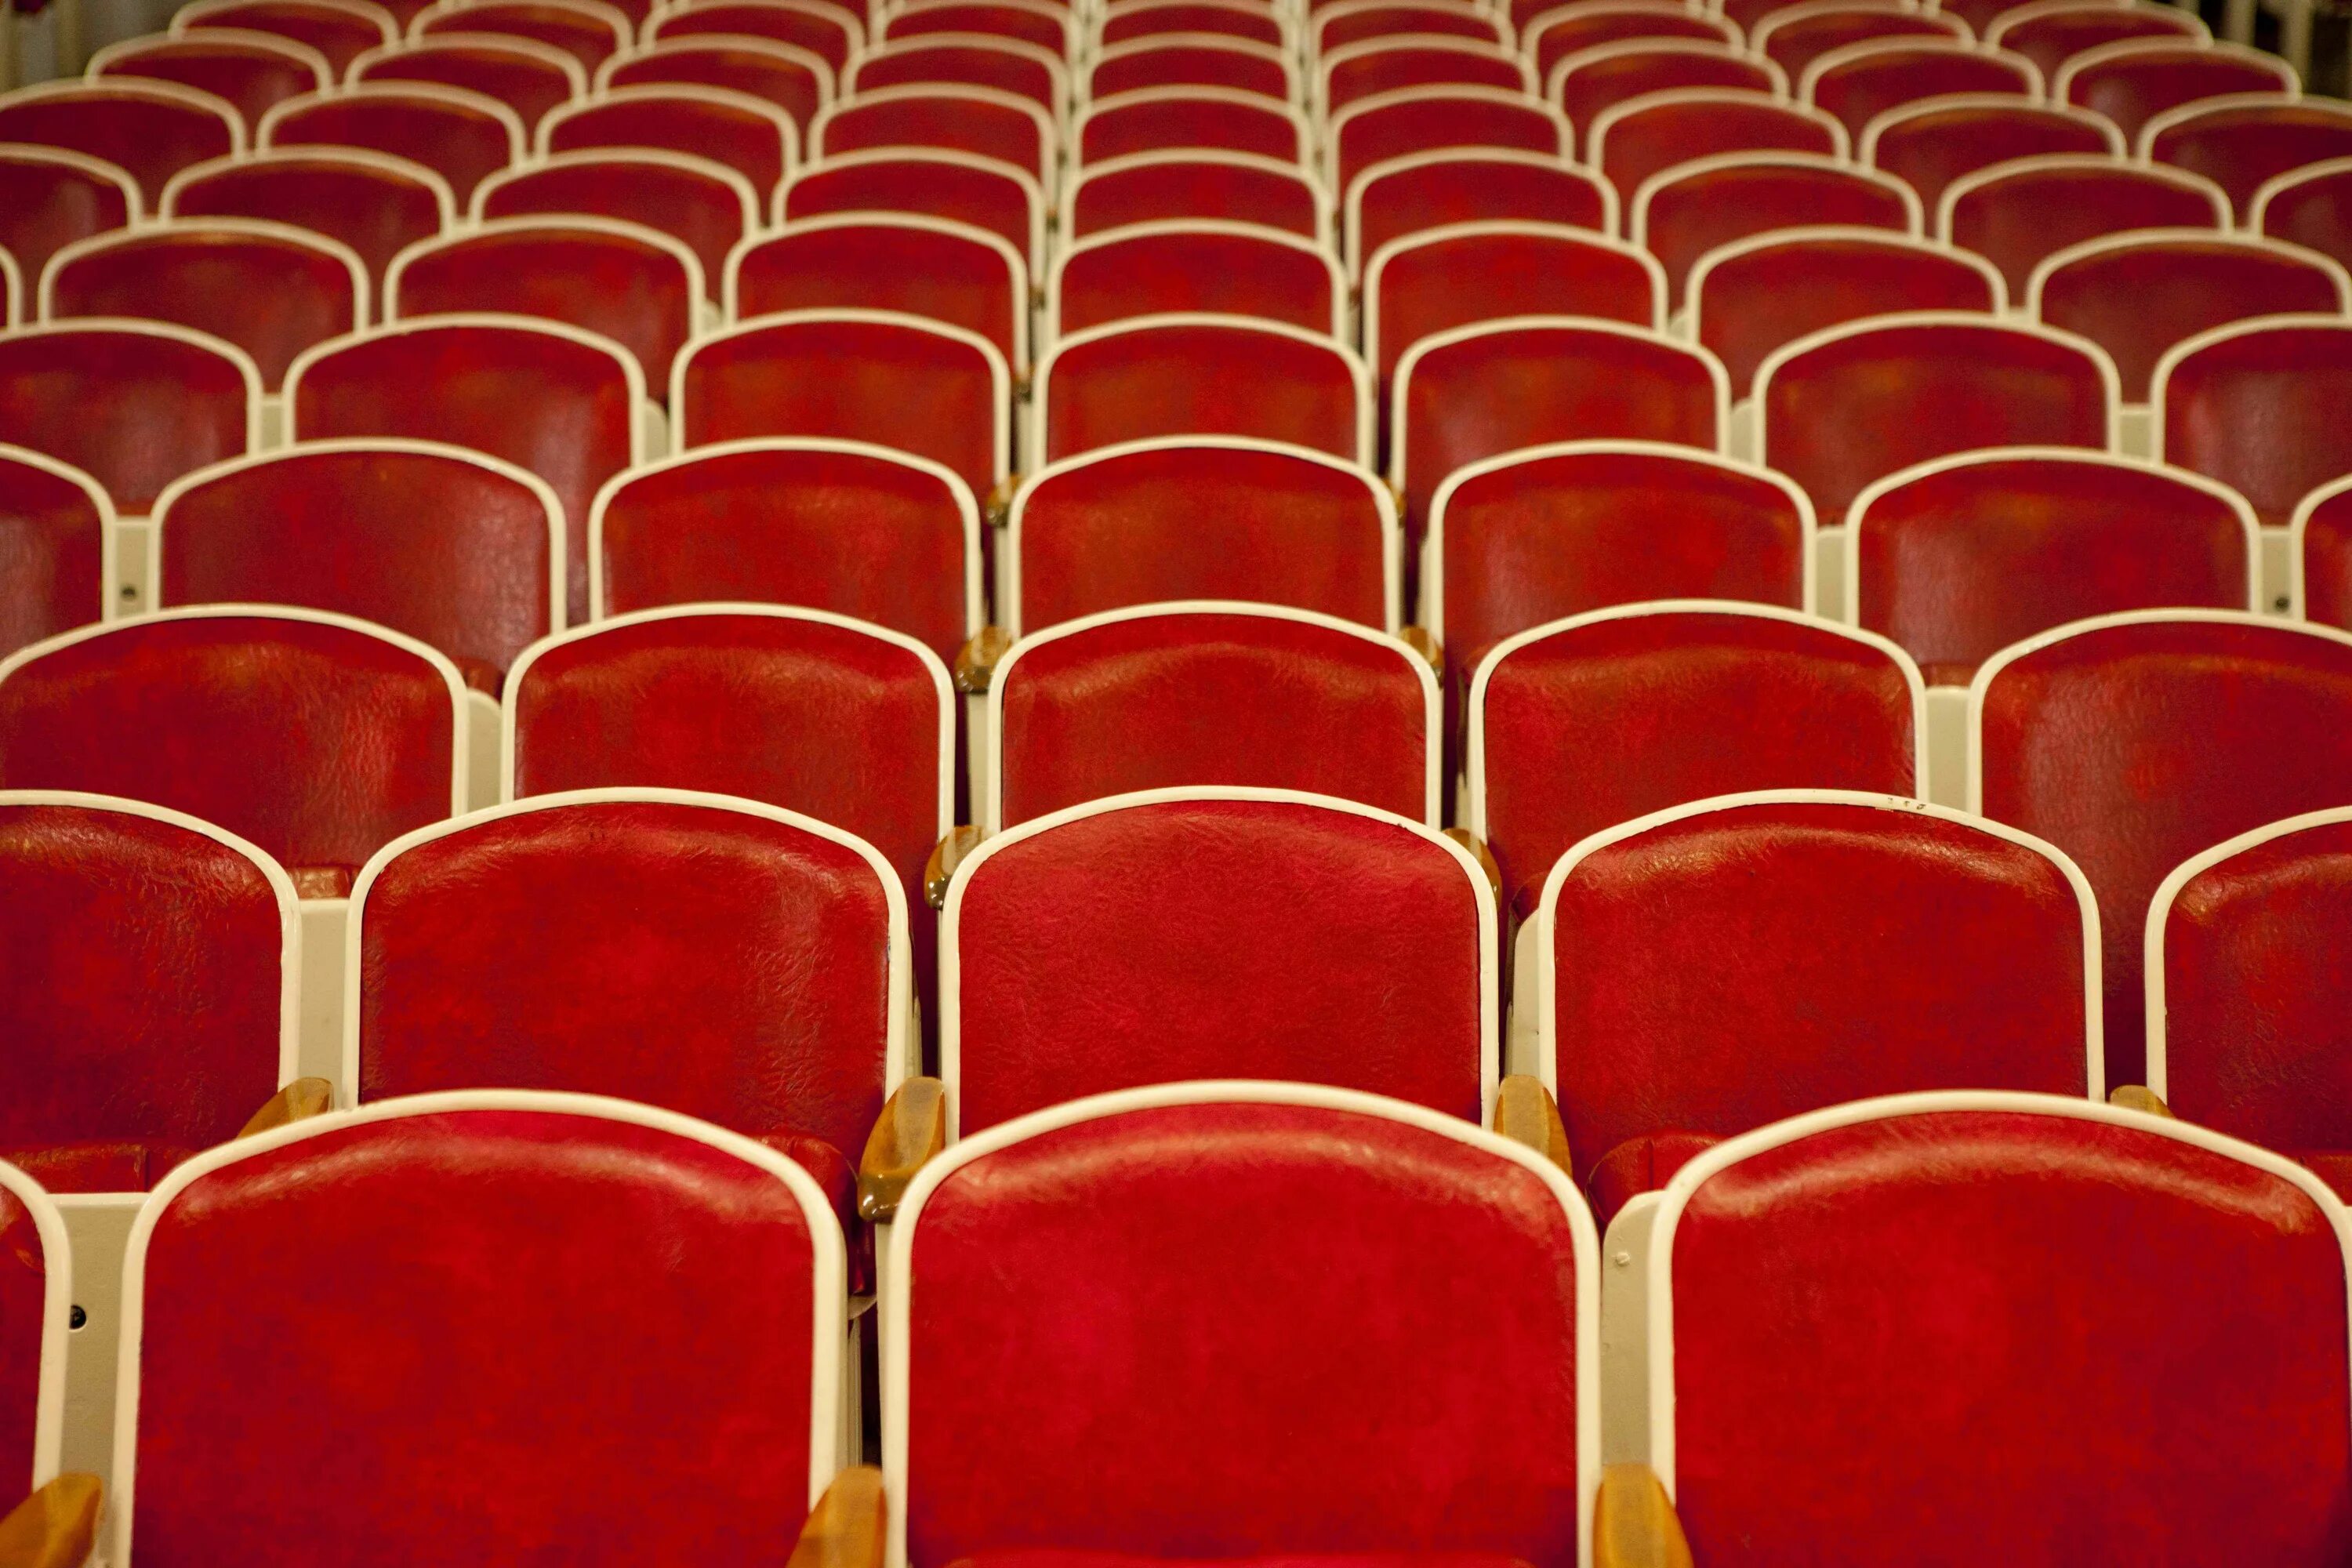 Theatre seats. Сиденья в кинотеатре. Кресла кинотеатра на прозрачном фоне. Стулья в театре.